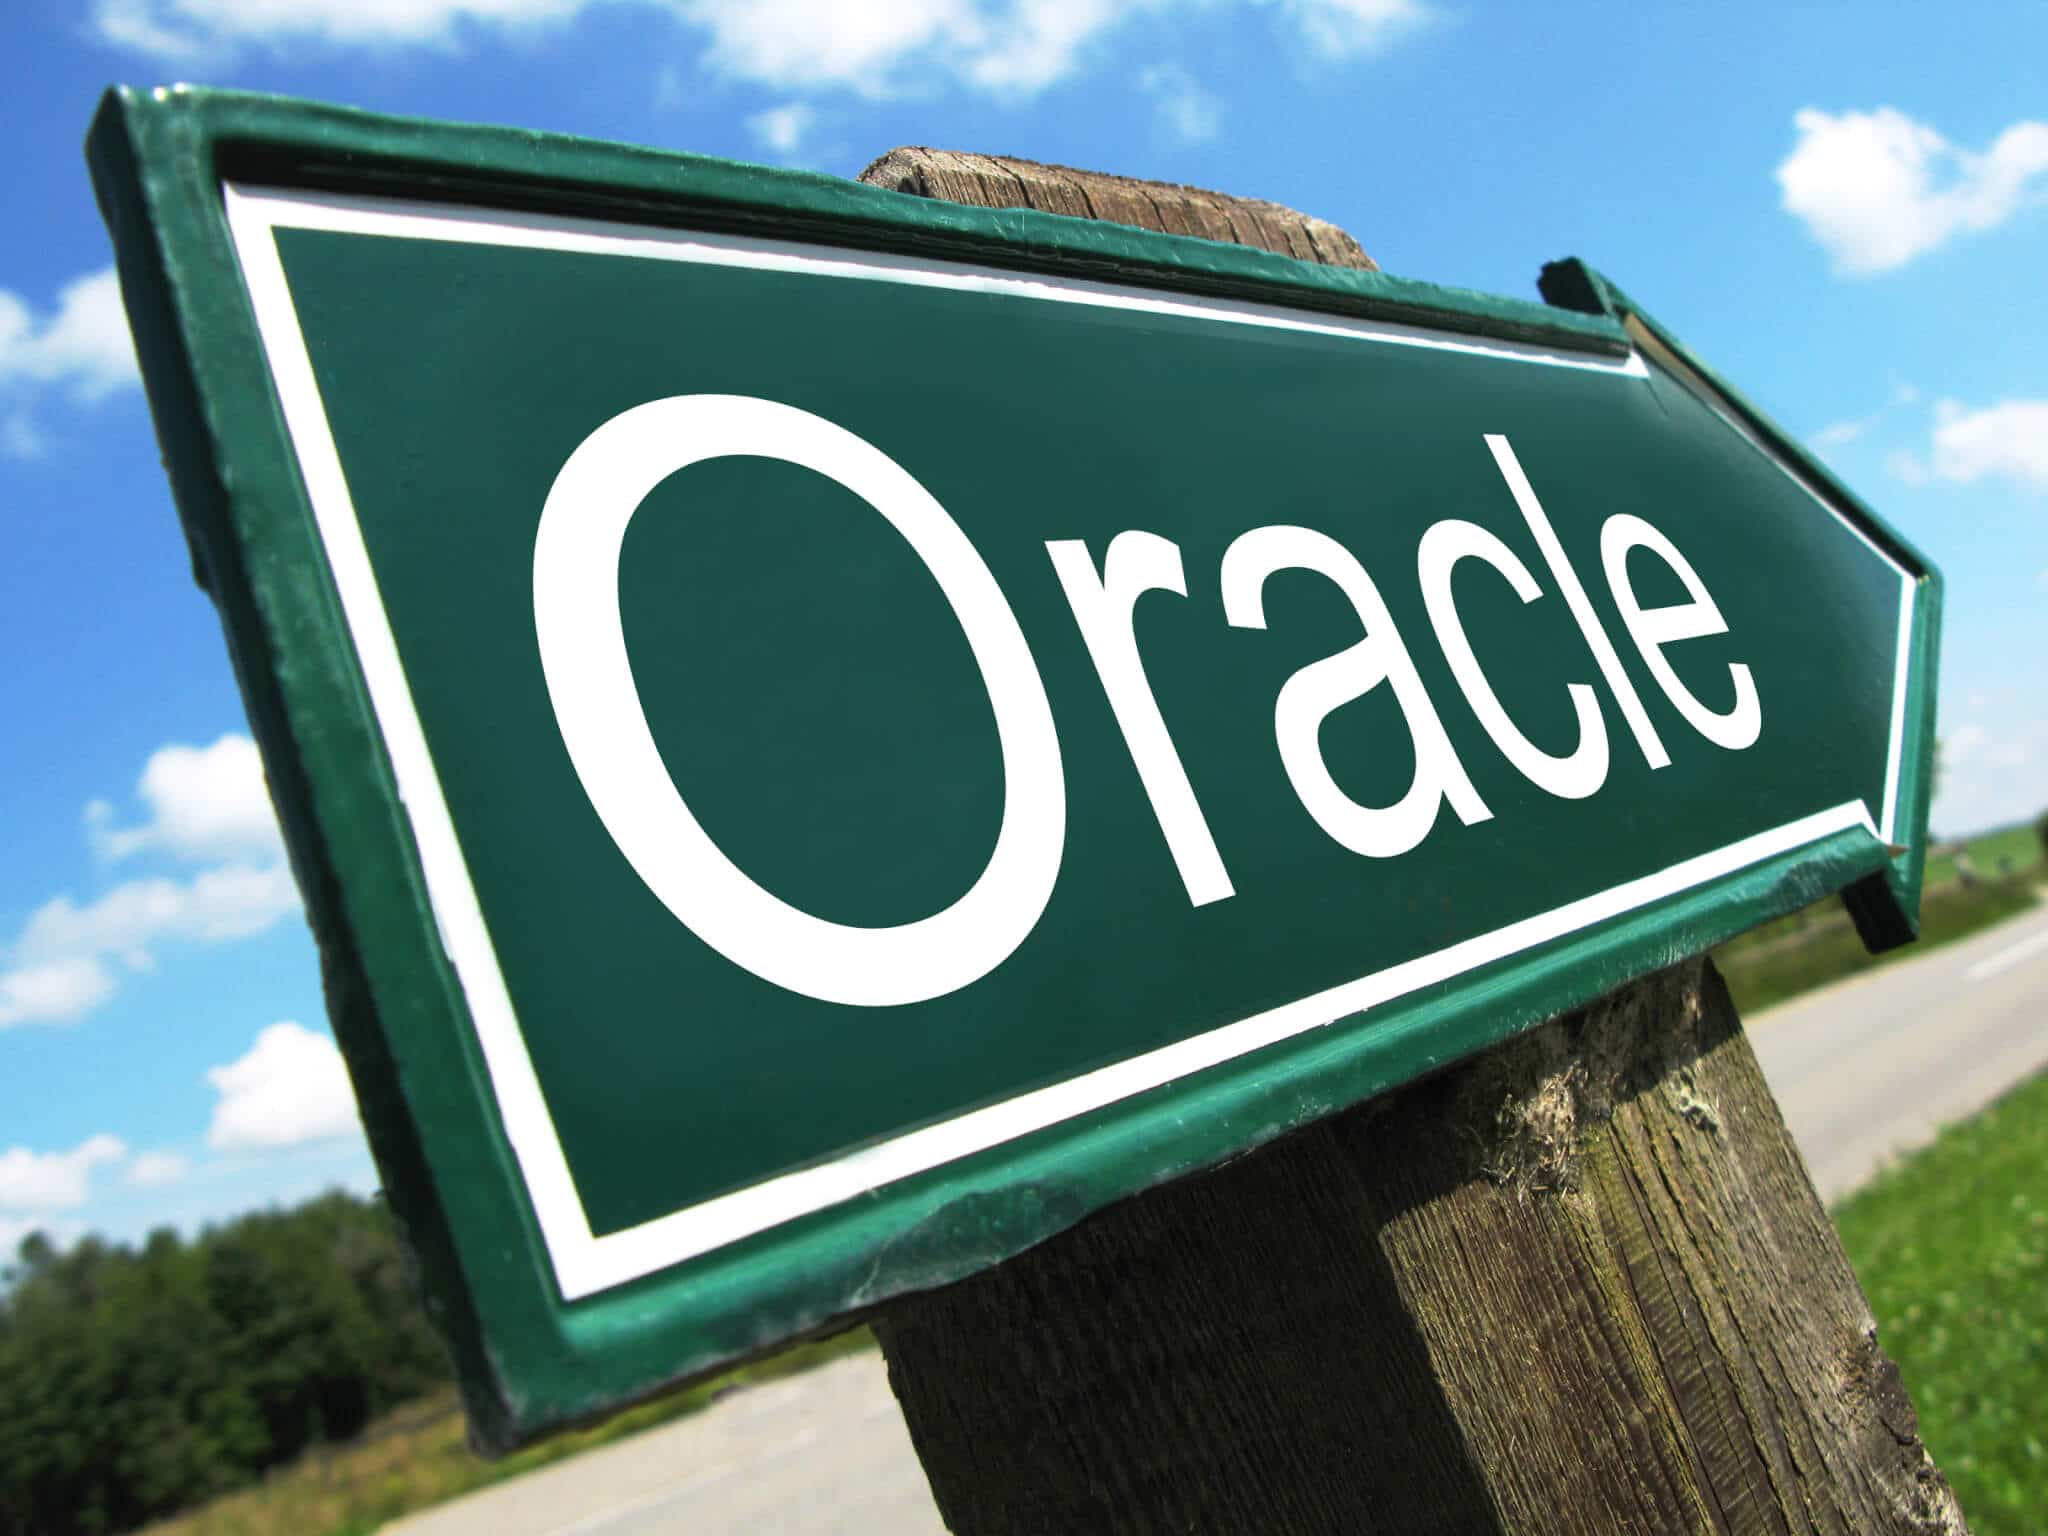 Oracle'i märkide tõlgendamine